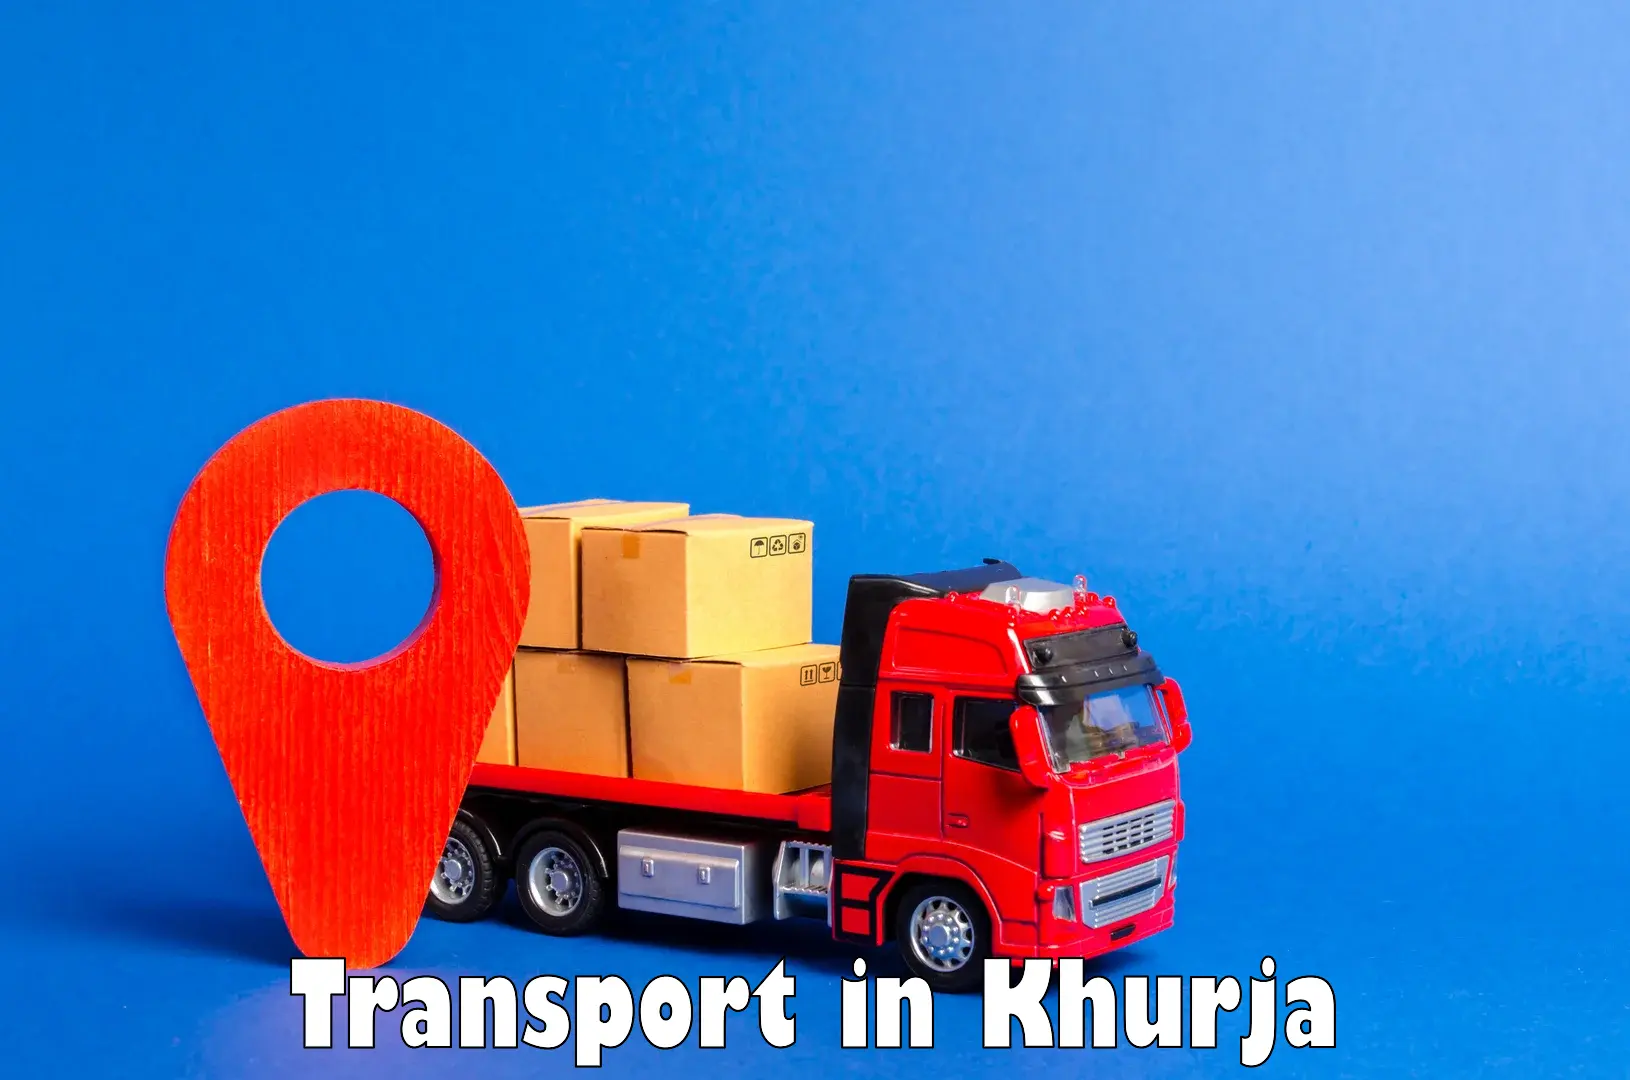 Transportation solution services in Khurja